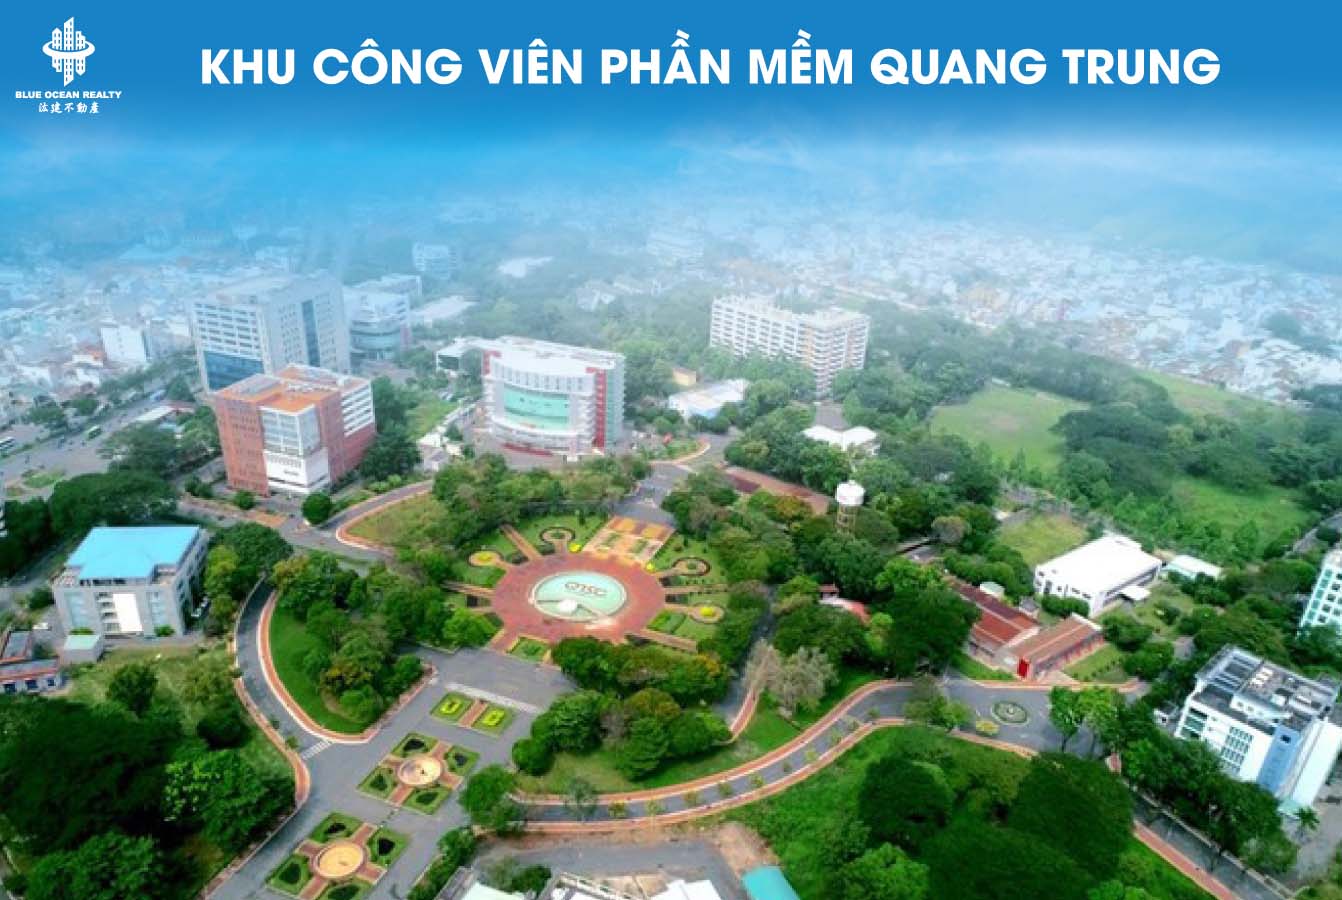 Khu công viên phần-mềm Quang Trung - TPHCM